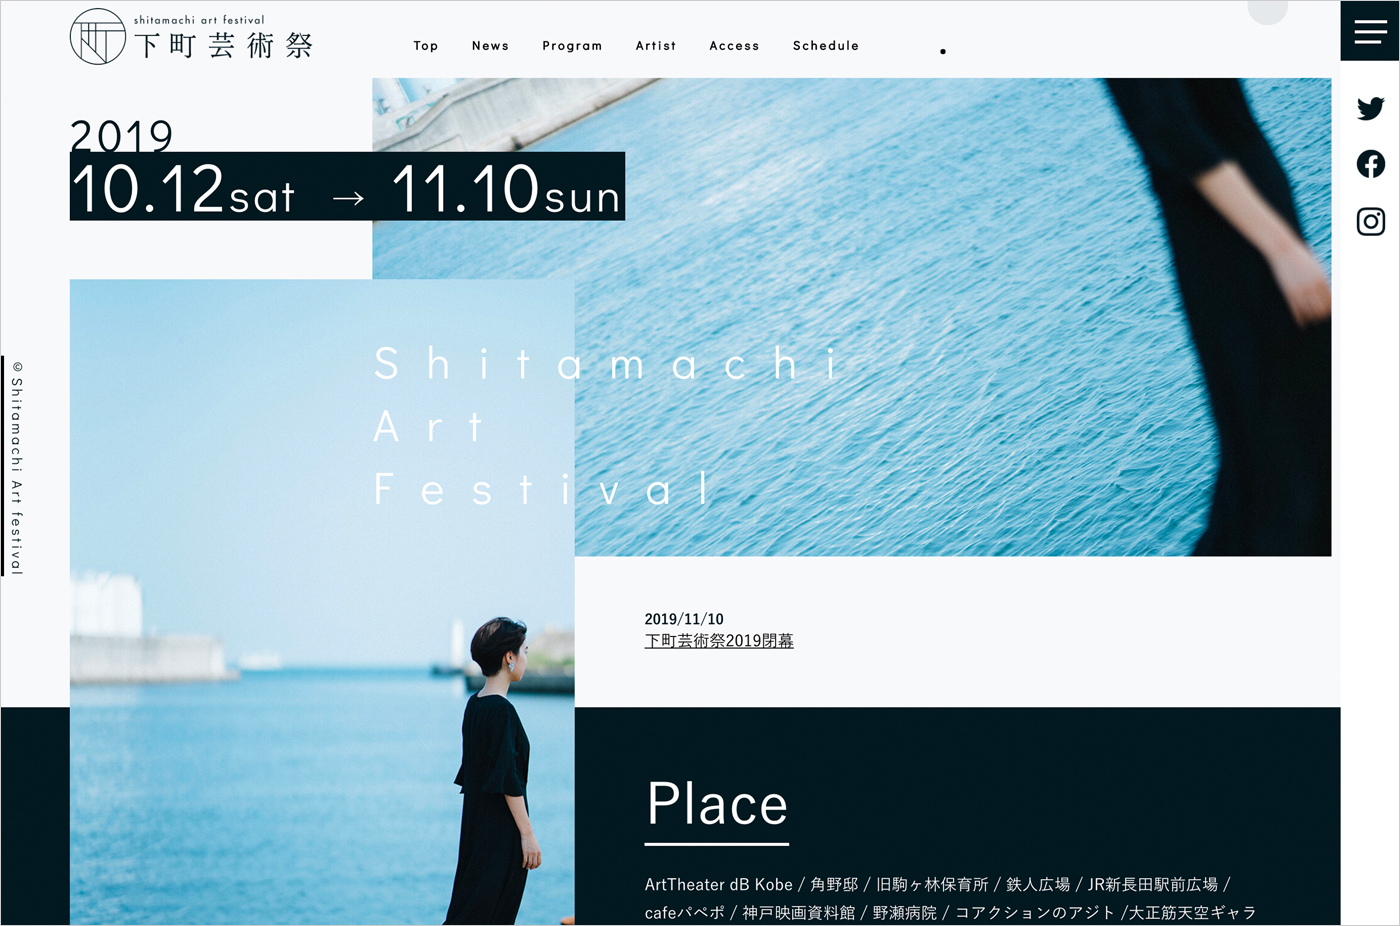 下町芸術祭 Shitamachi Art Festival 2019ウェブサイトの画面キャプチャ画像